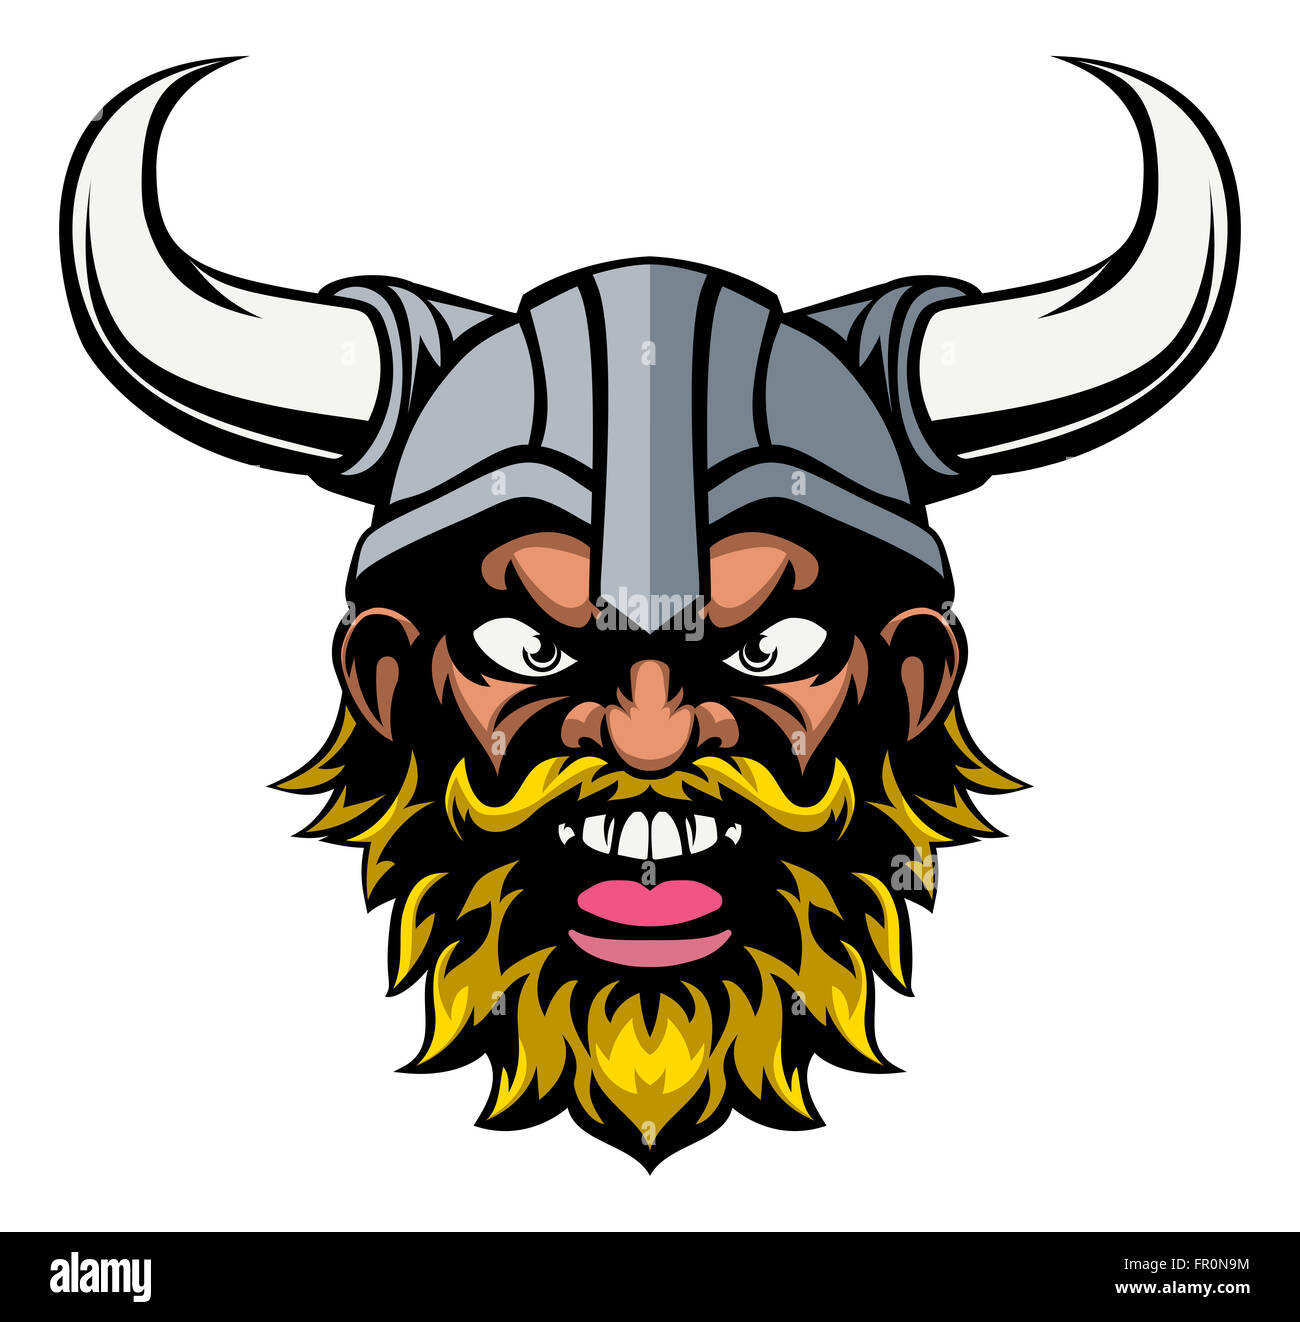 Une moyenne à la viking cartoon mascot sport Banque D'Images